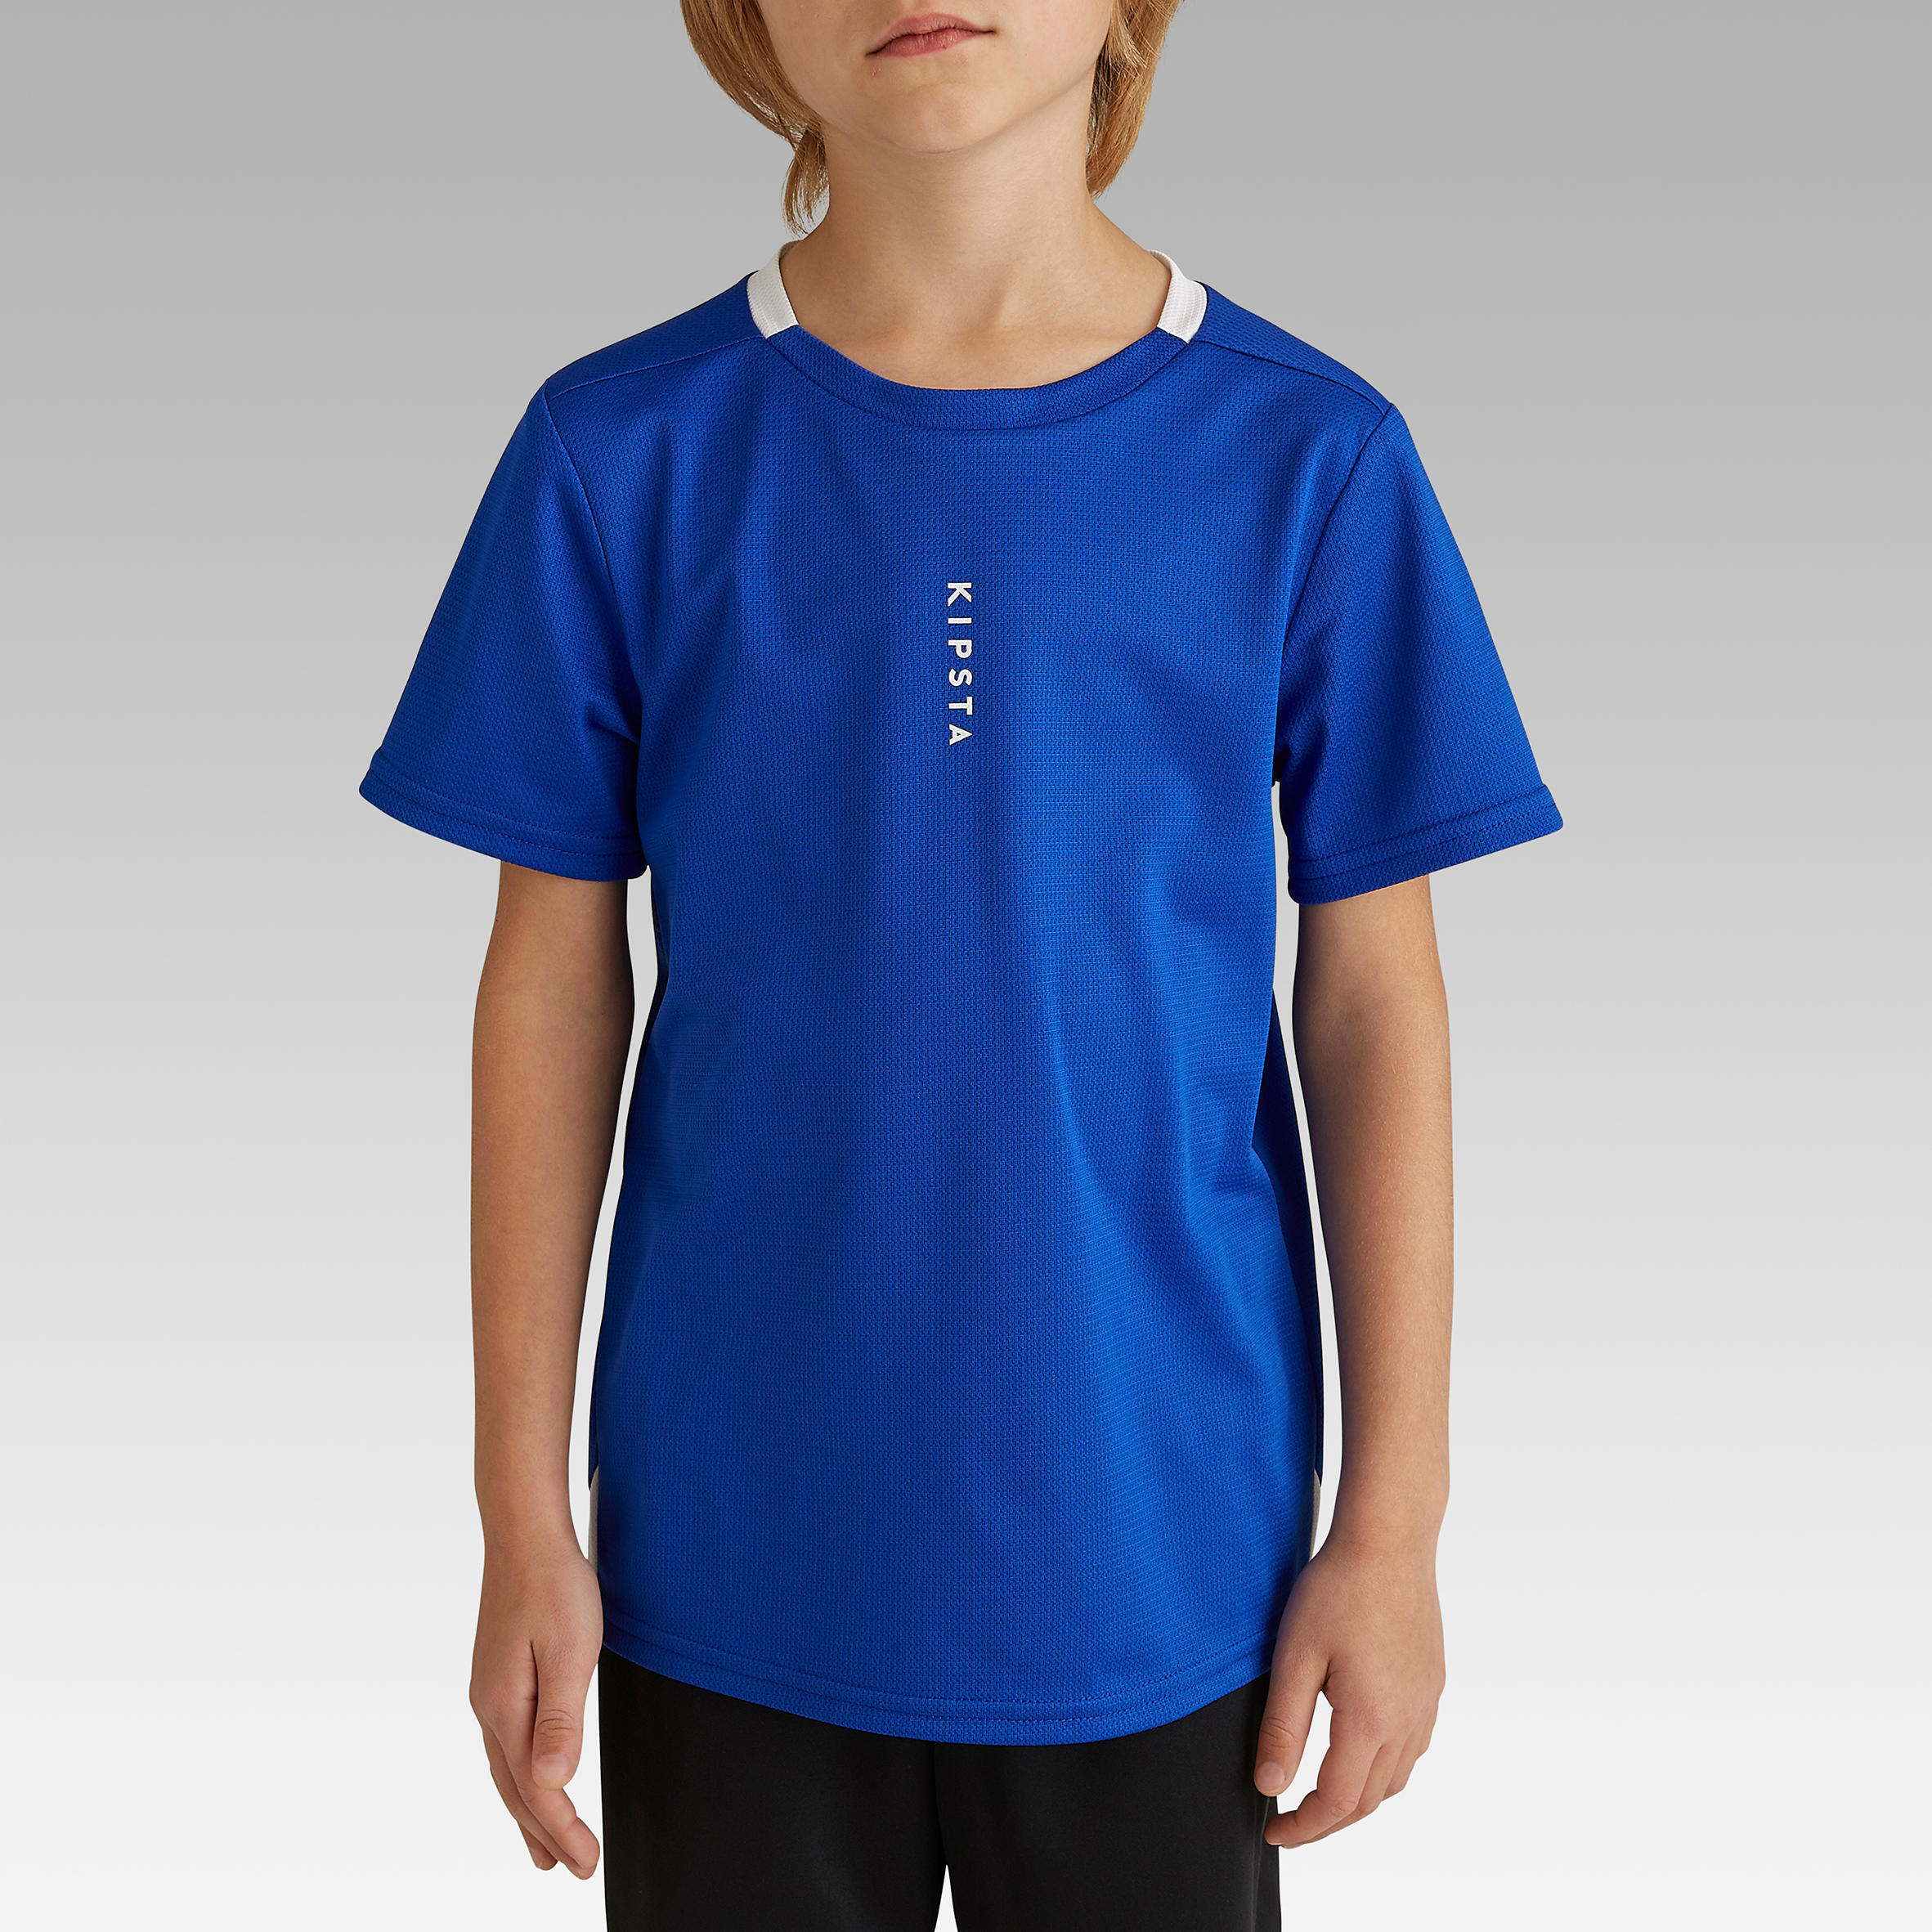 Kids' Football Shirt Essential - Blue 2/8